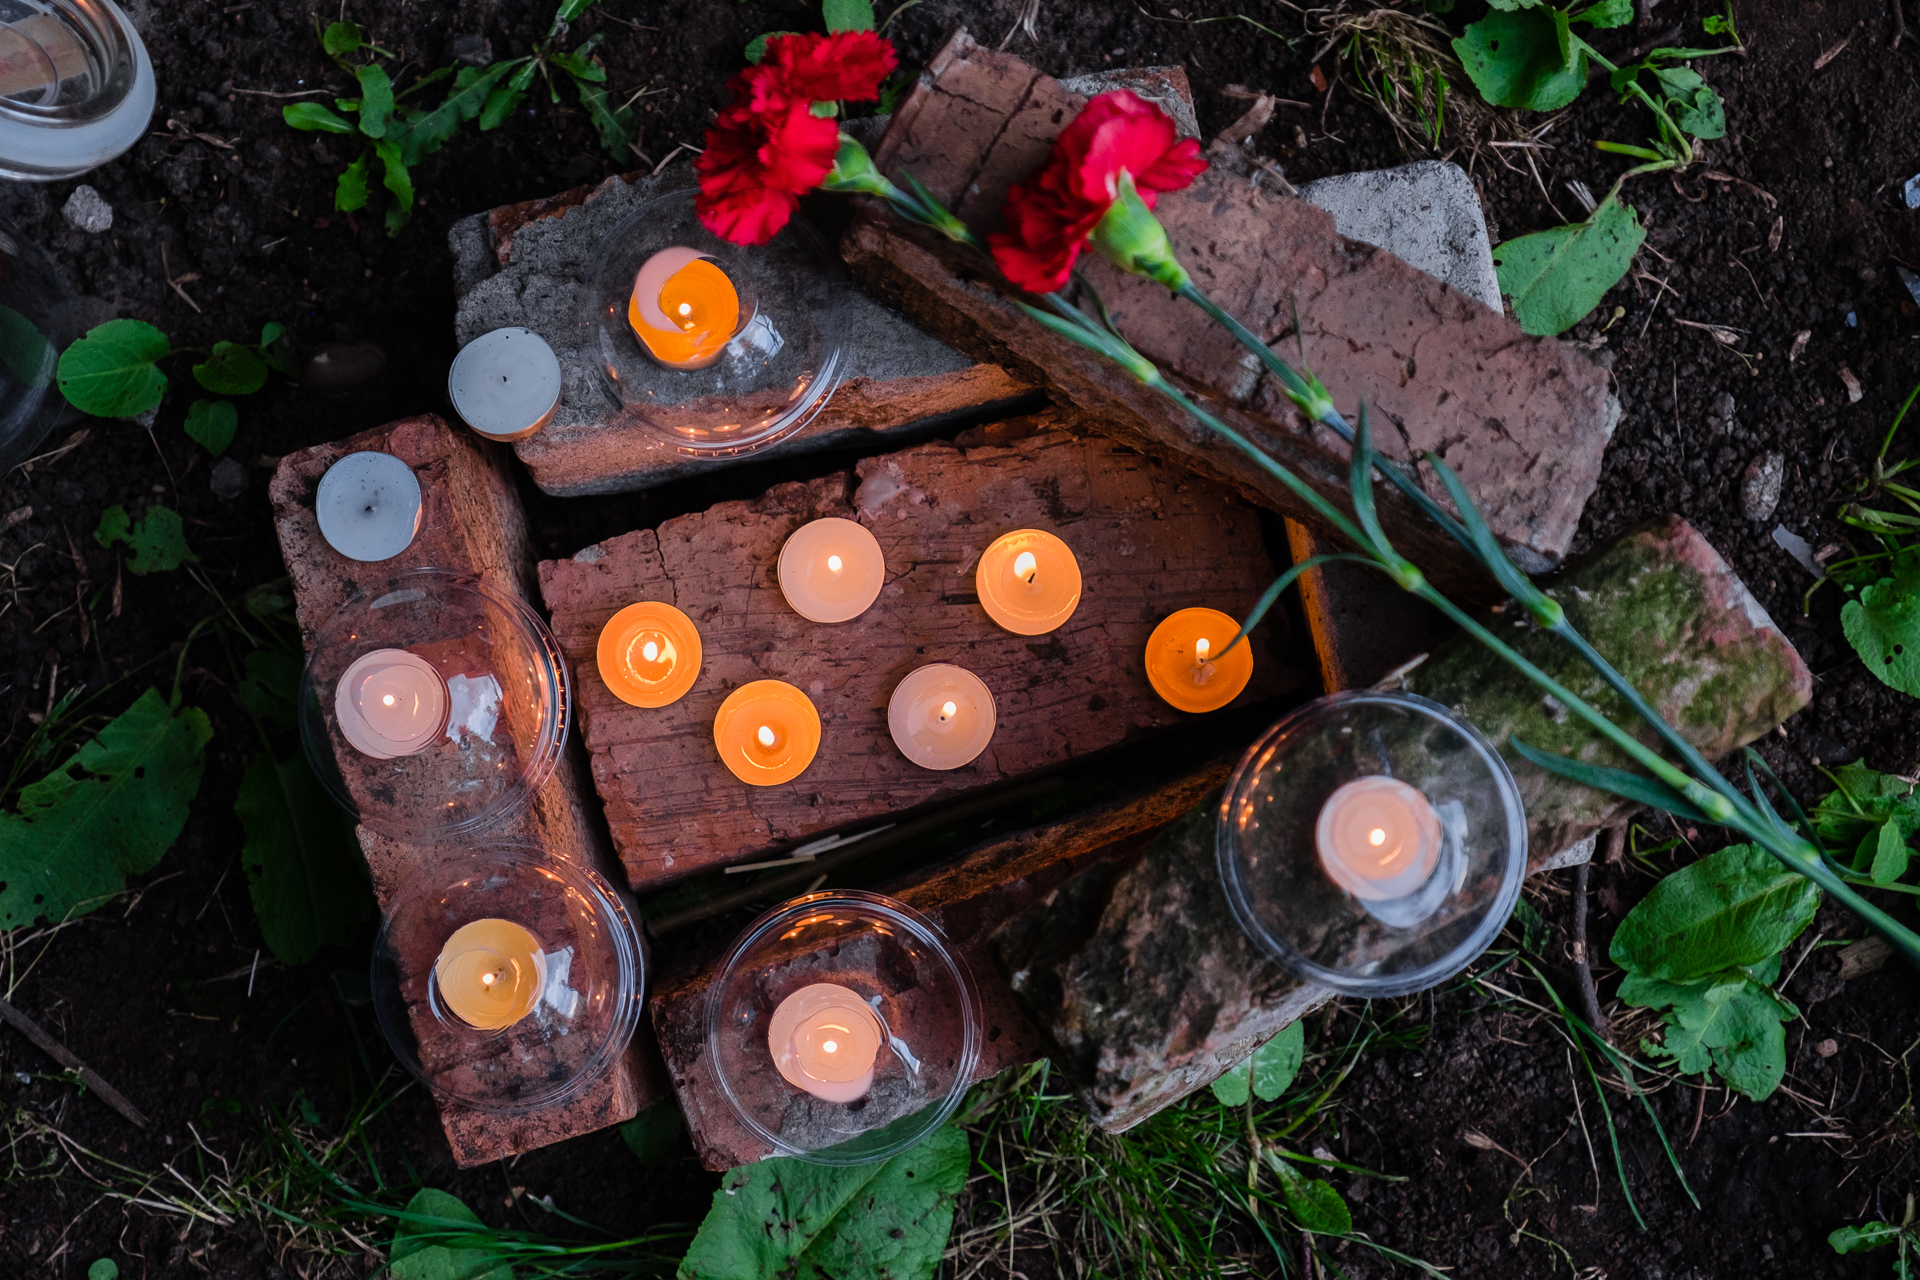 К арт-объектам, созданным Александром Жуневым, пермяки приносят цветы и зажигают свечи